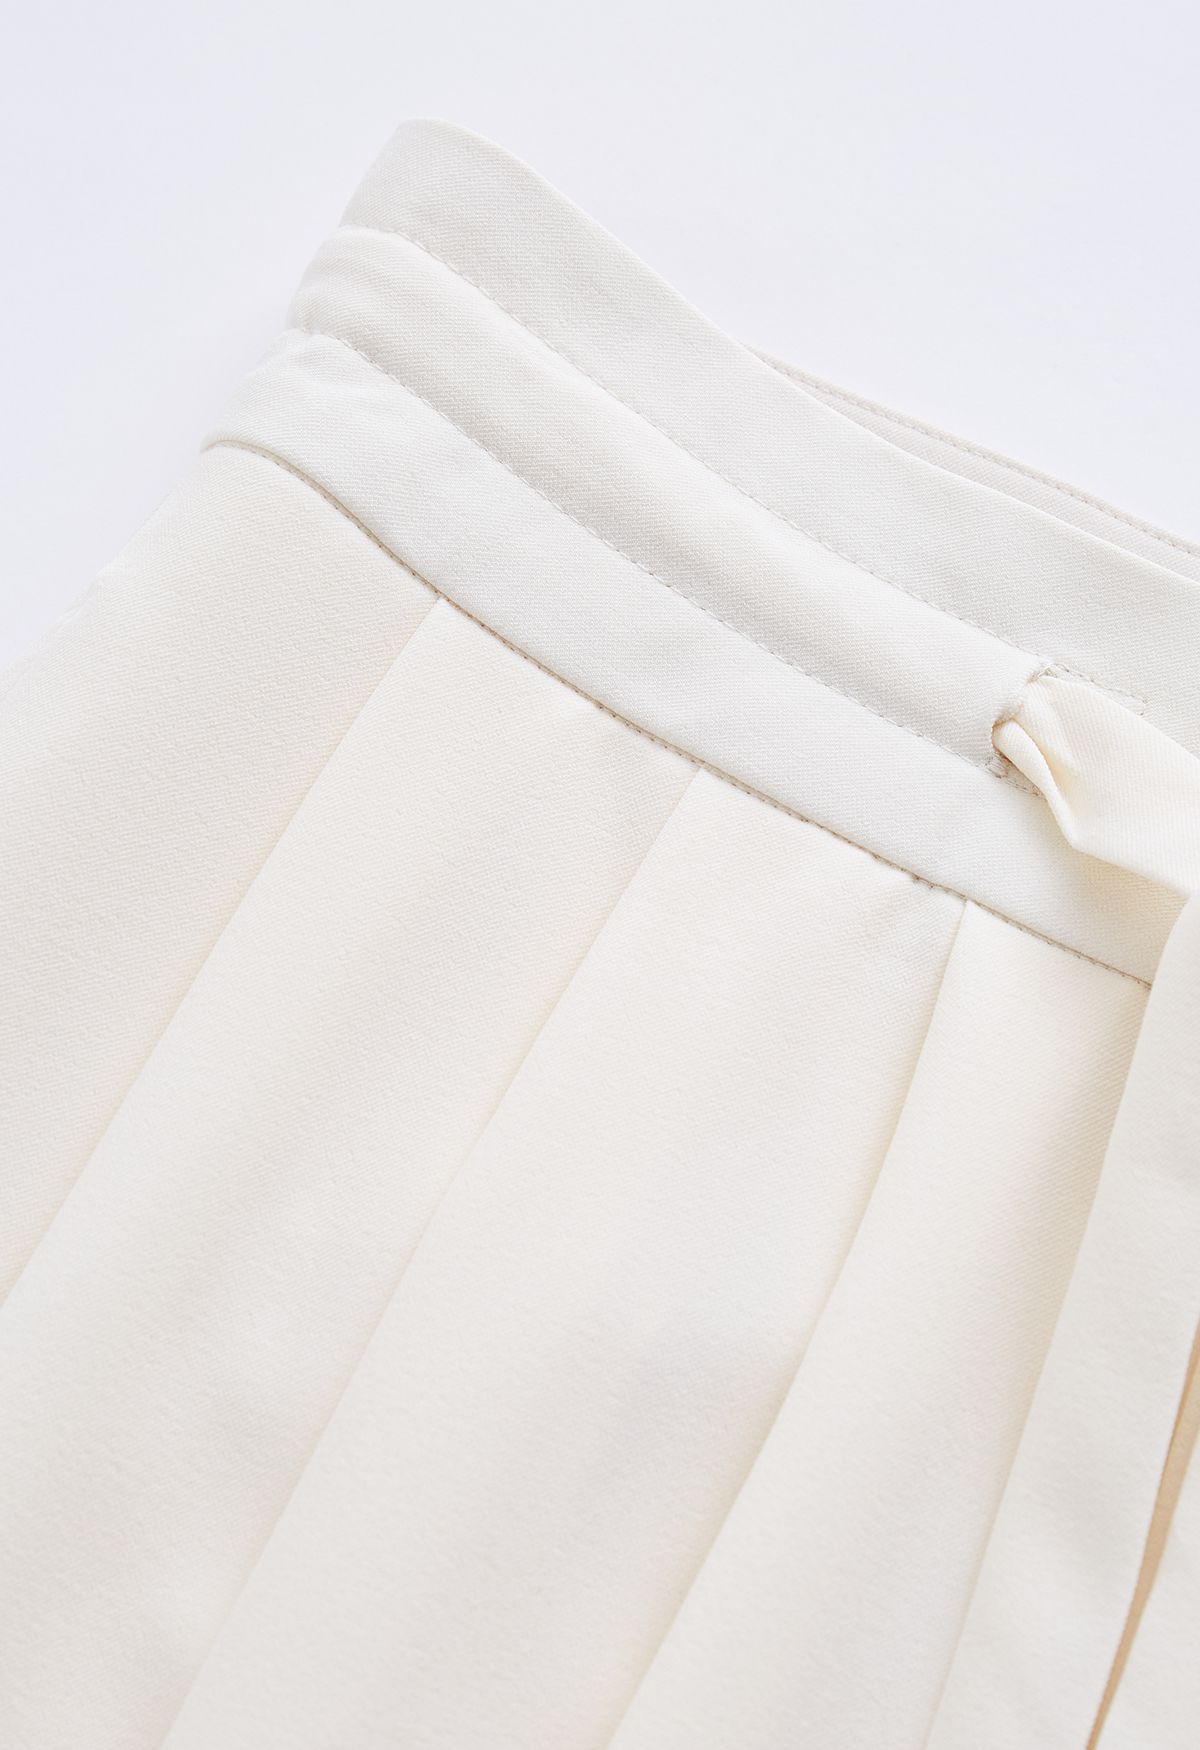 Pantalones de pernera ancha con cordón en la cintura con detalle plisado en color crema